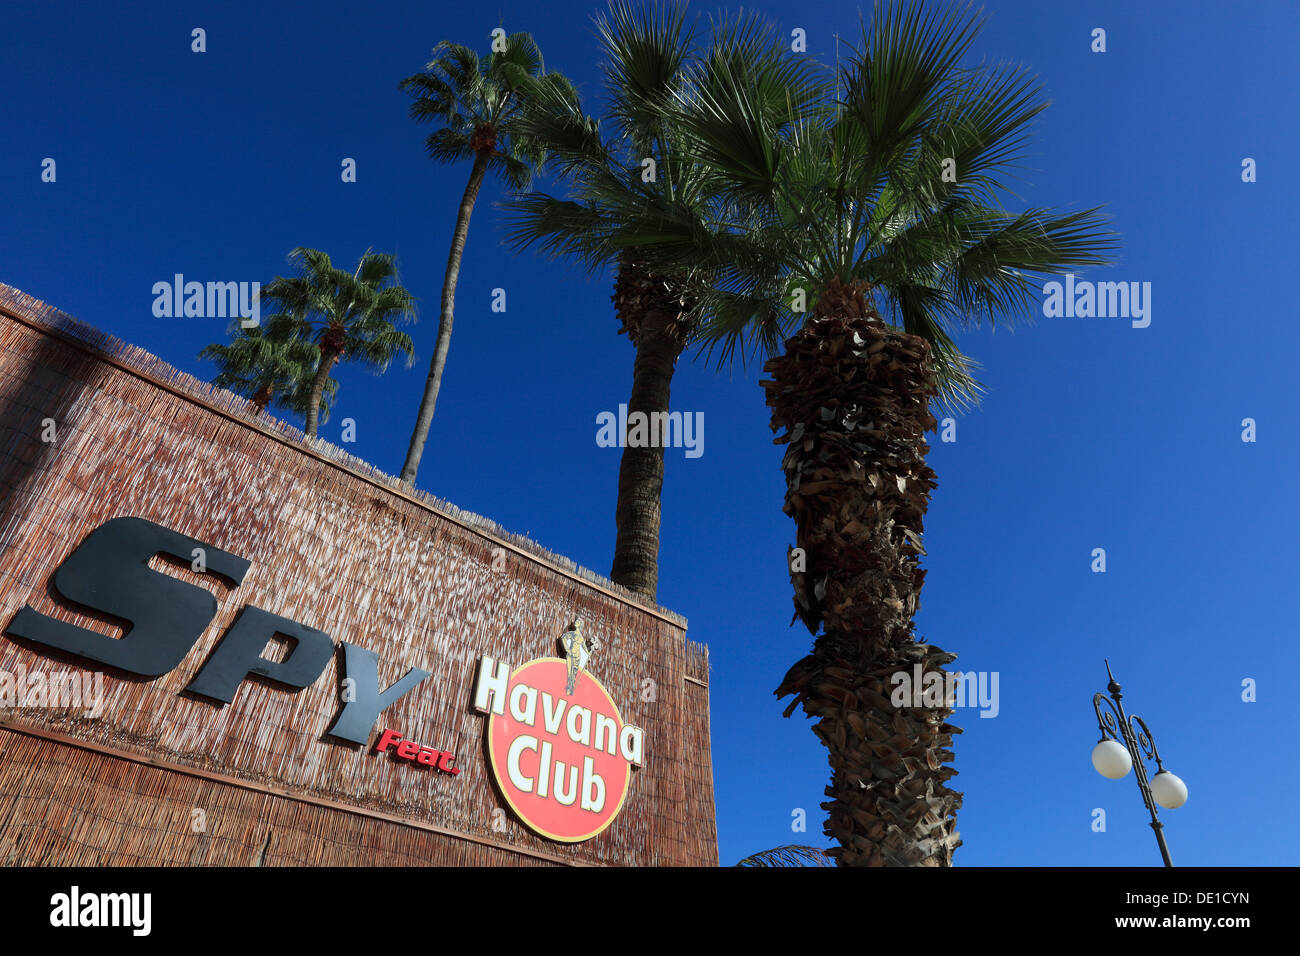 Cyprus, Larnaca, Havana club, advertising, palms Stock Photo